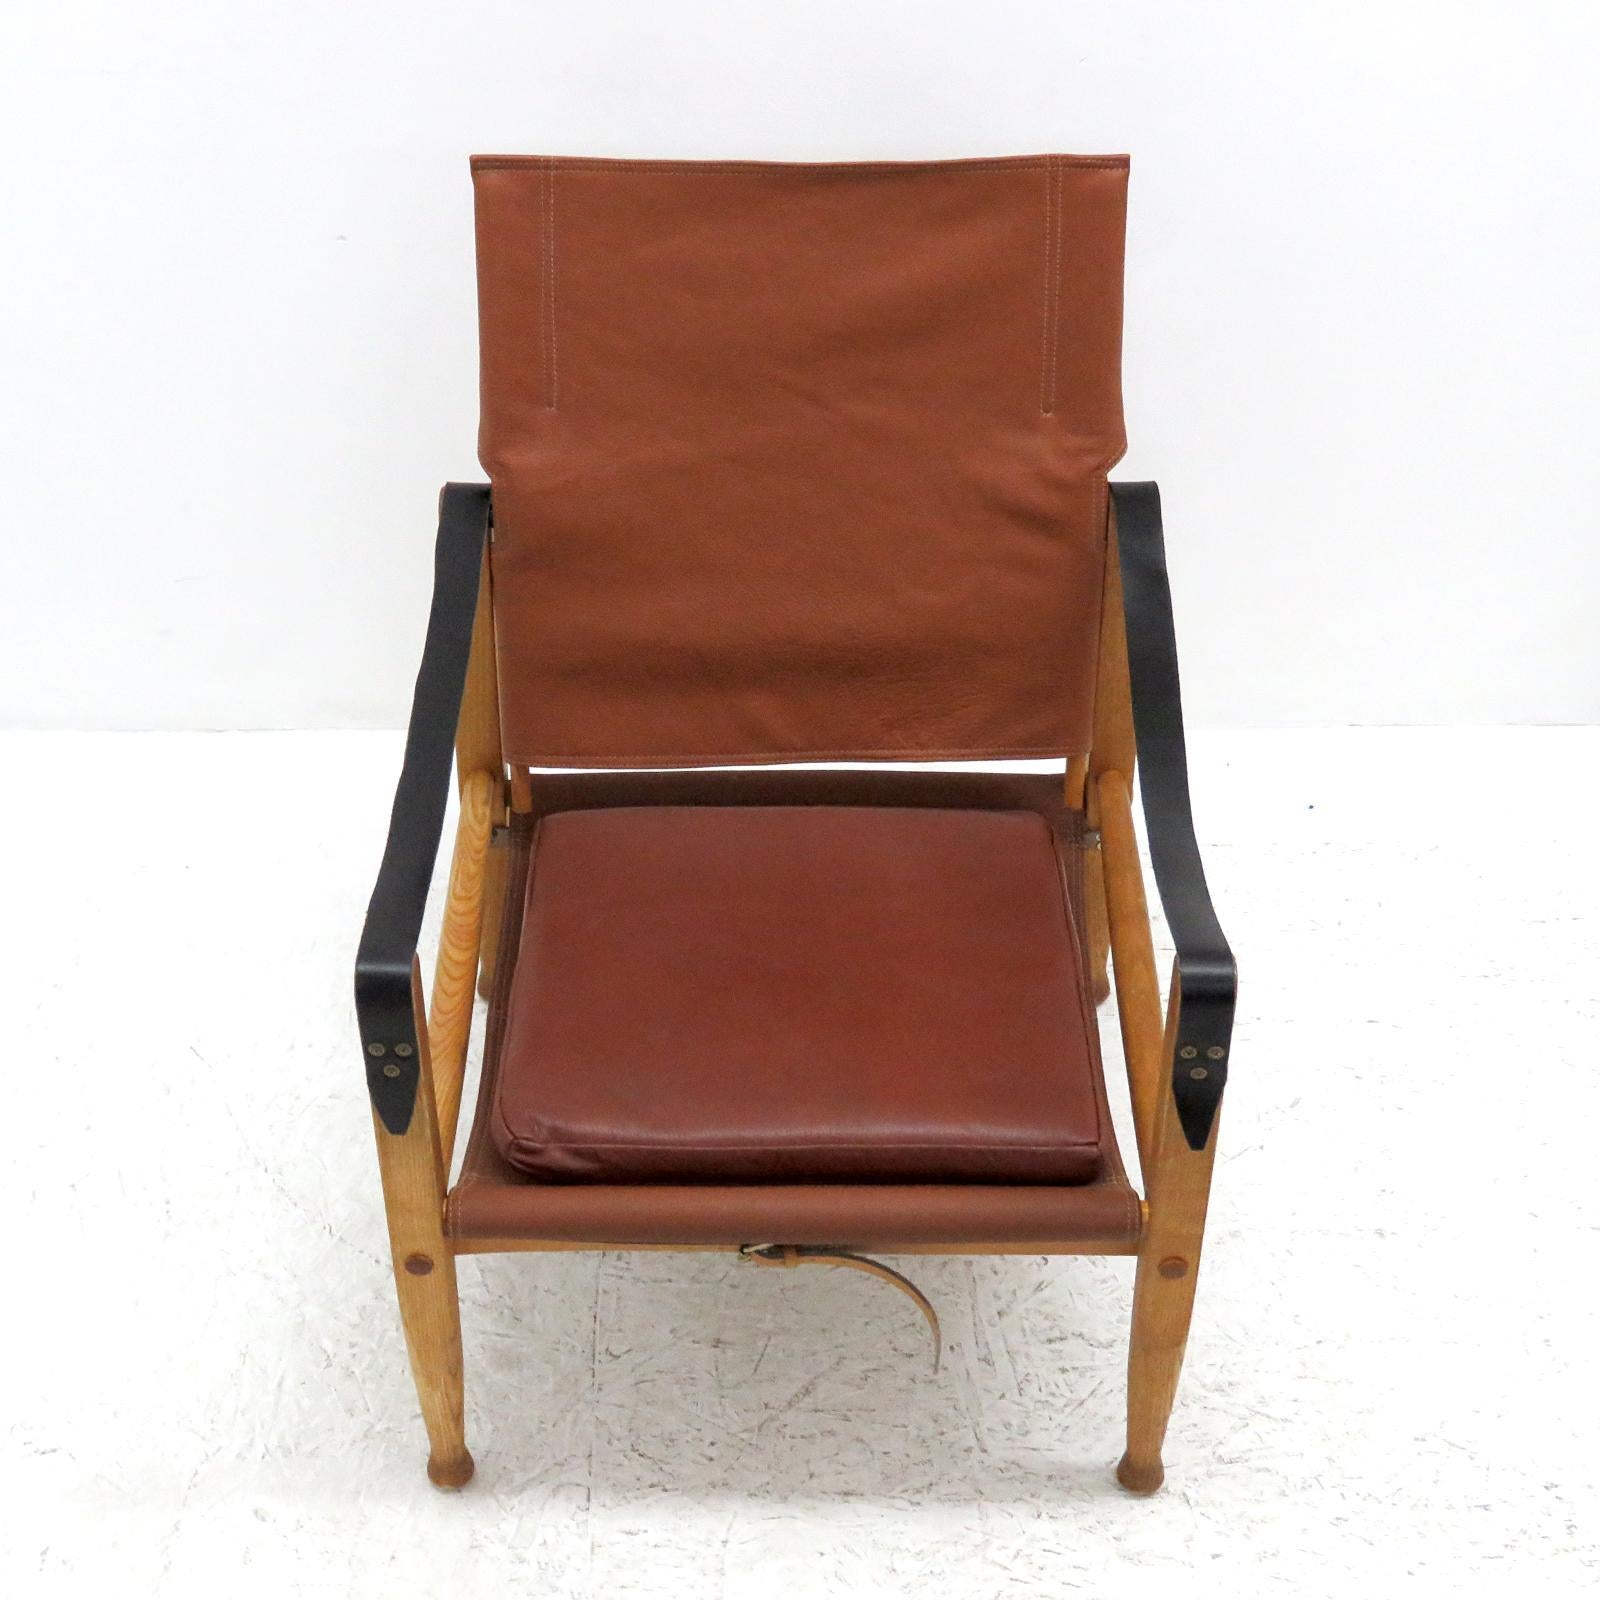 Scandinavian Modern Safari Chair by Kaare Klint, 1969 For Sale